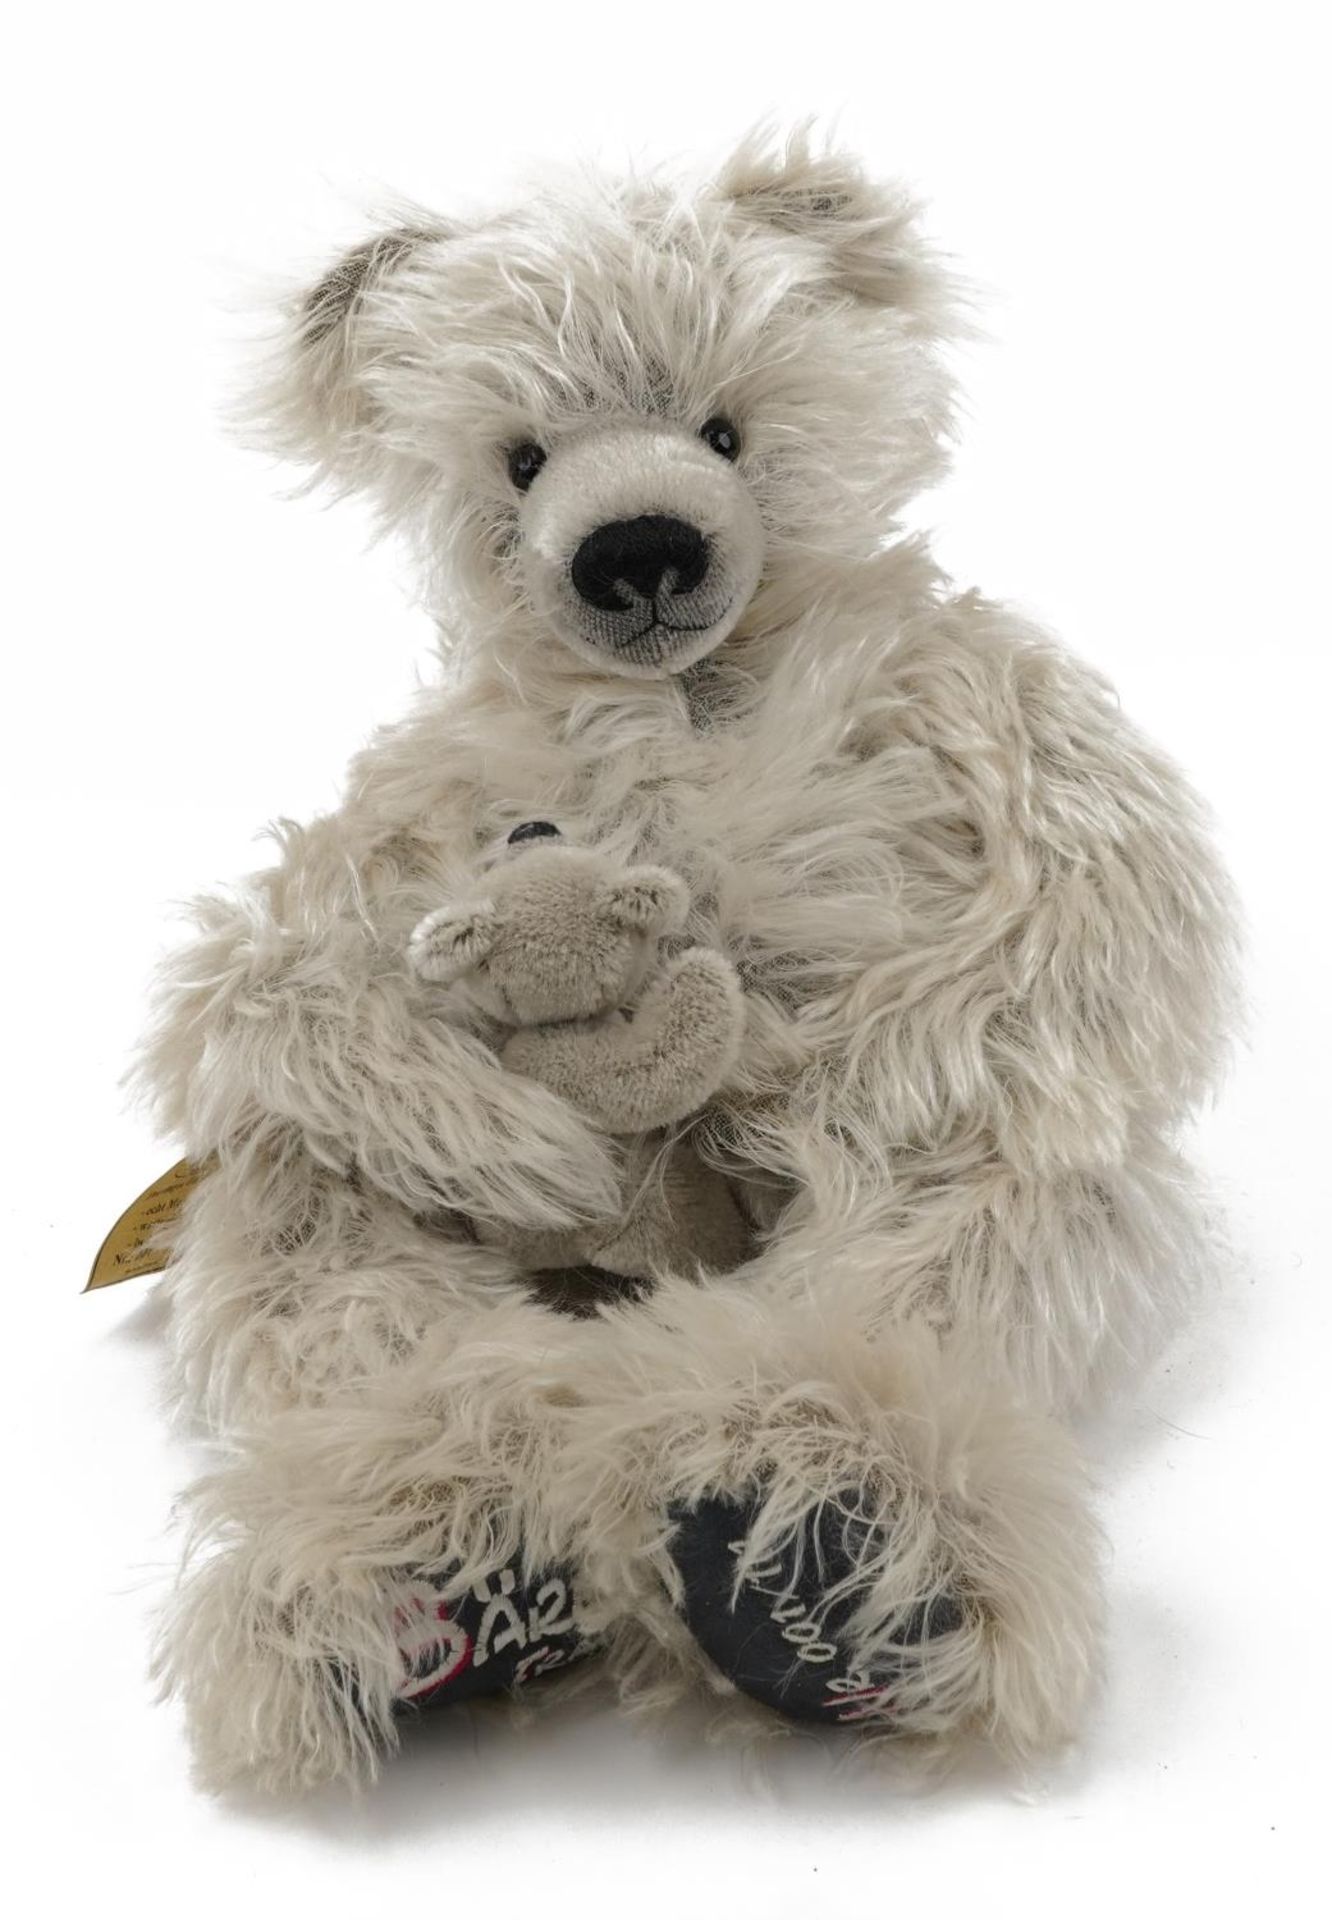 Plusch-und Stoffspielwaren, German limited edition teddy bear with cub Baren Traum with